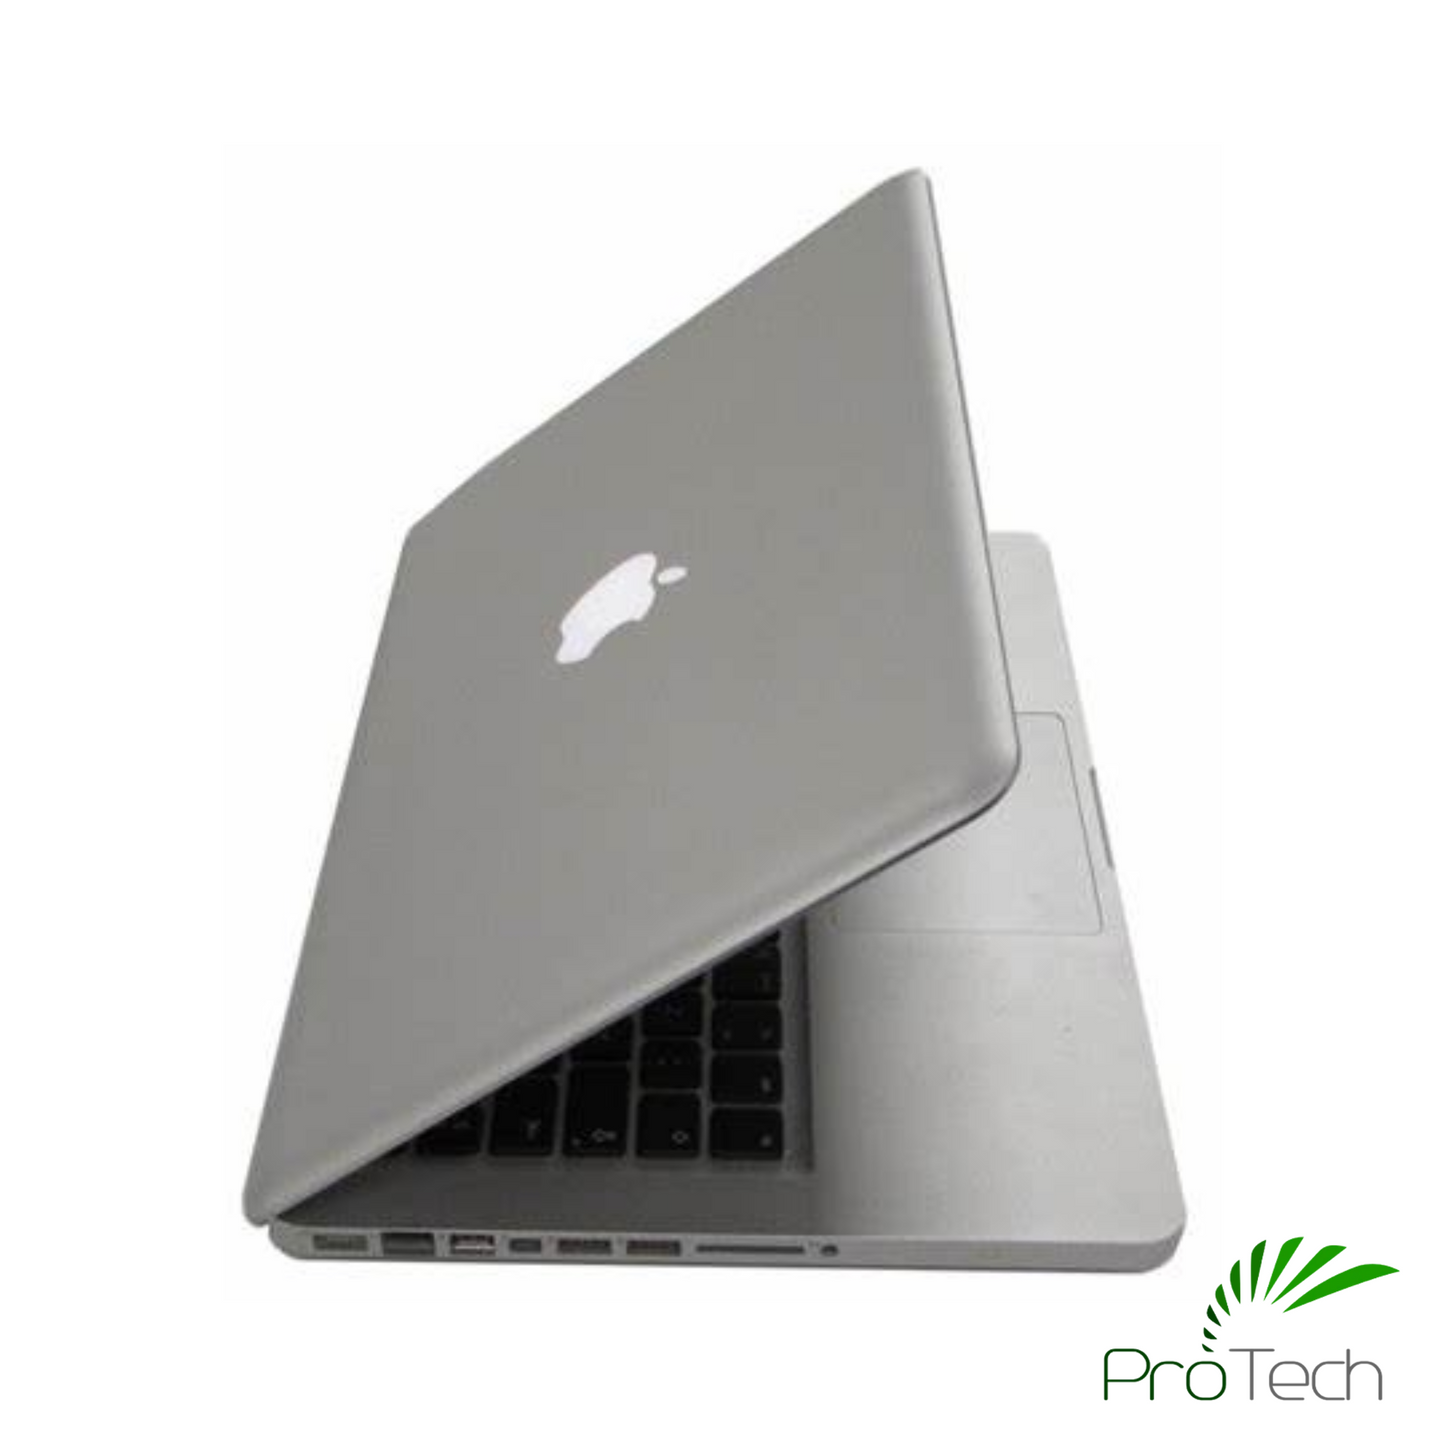 Apple MacBook Pro 13" A1278 (Mid 2012) | Core i5 | 4GB RAM | 128GB SSD